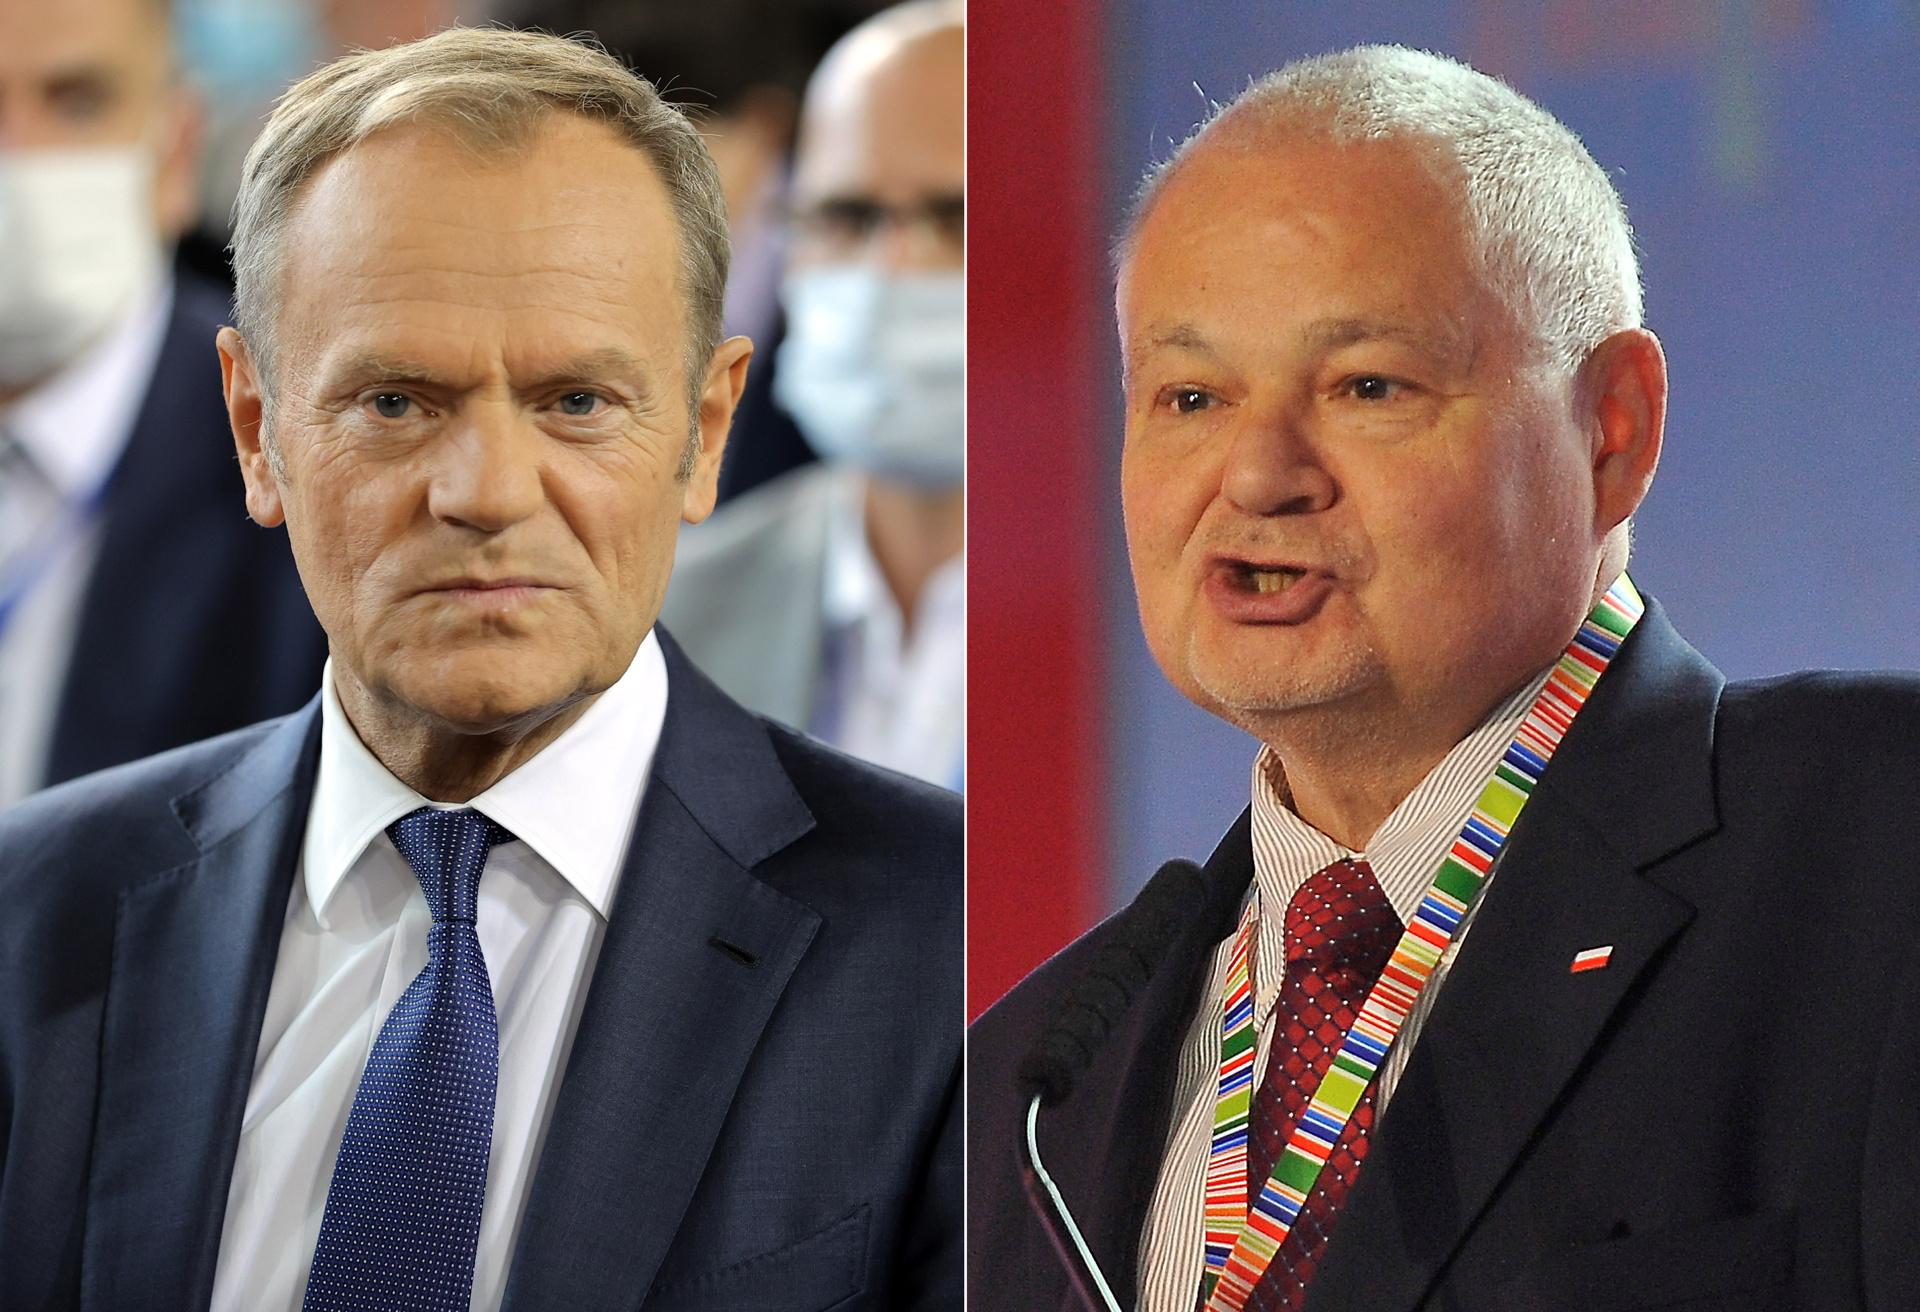 Konflikt Tusk gegen Glapiński.  Glapiński schlägt Tusk: Er will die PiS-Regierung stürzen und den Euro in Polen einführen